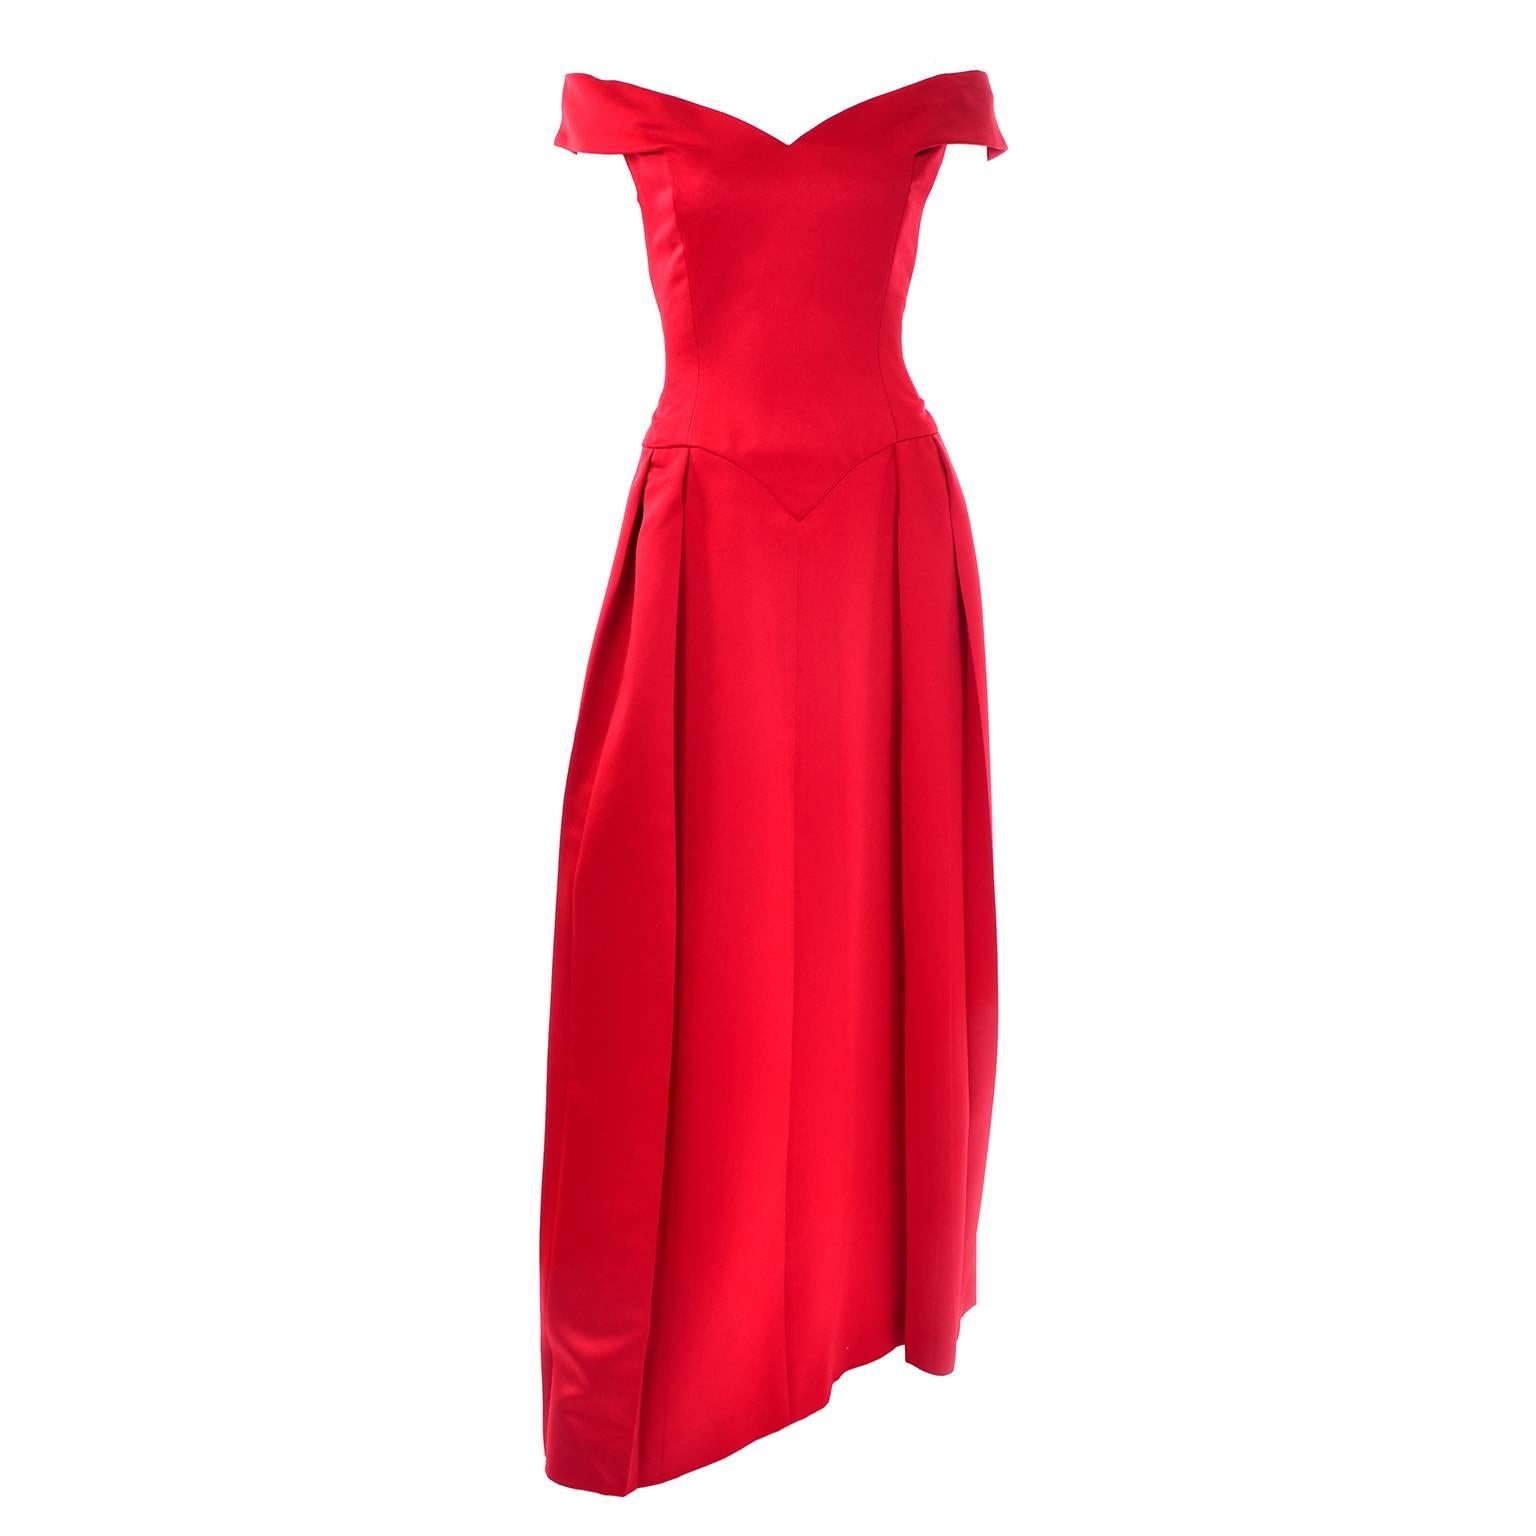 Victor Costa I Magnin Red Off Shoulder Vintage Dress Evening Ballgown